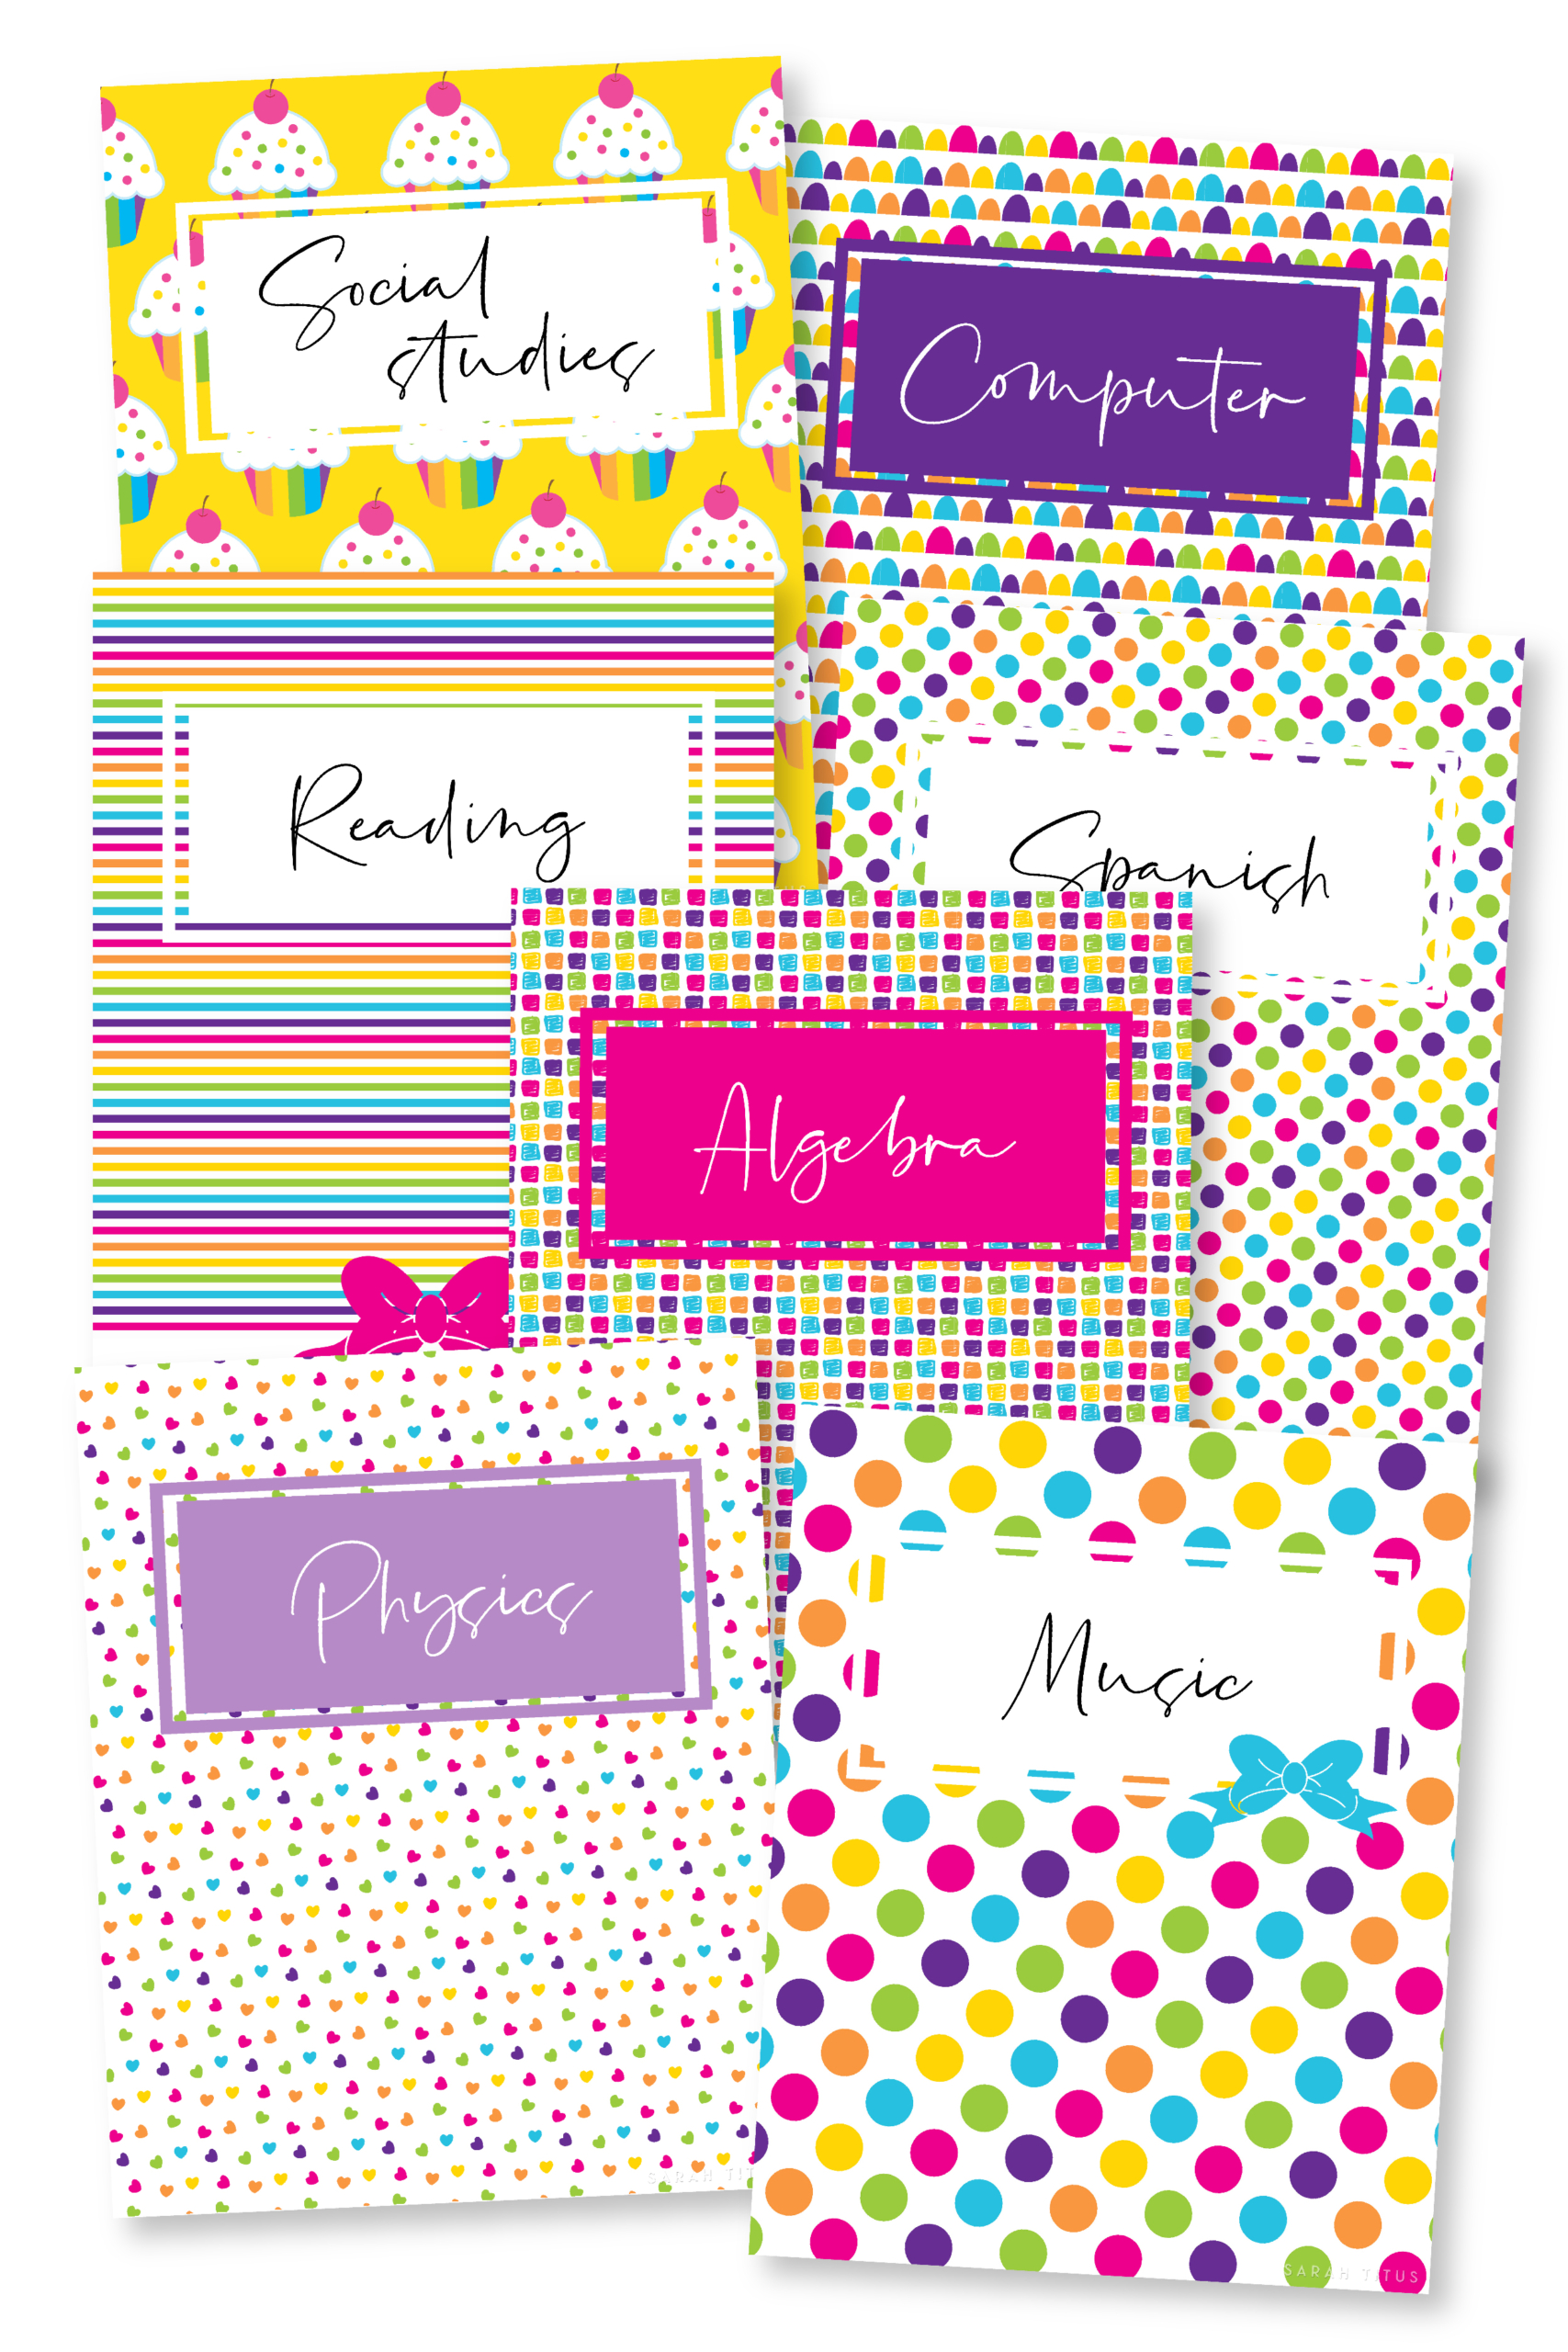 cute binder cover designs